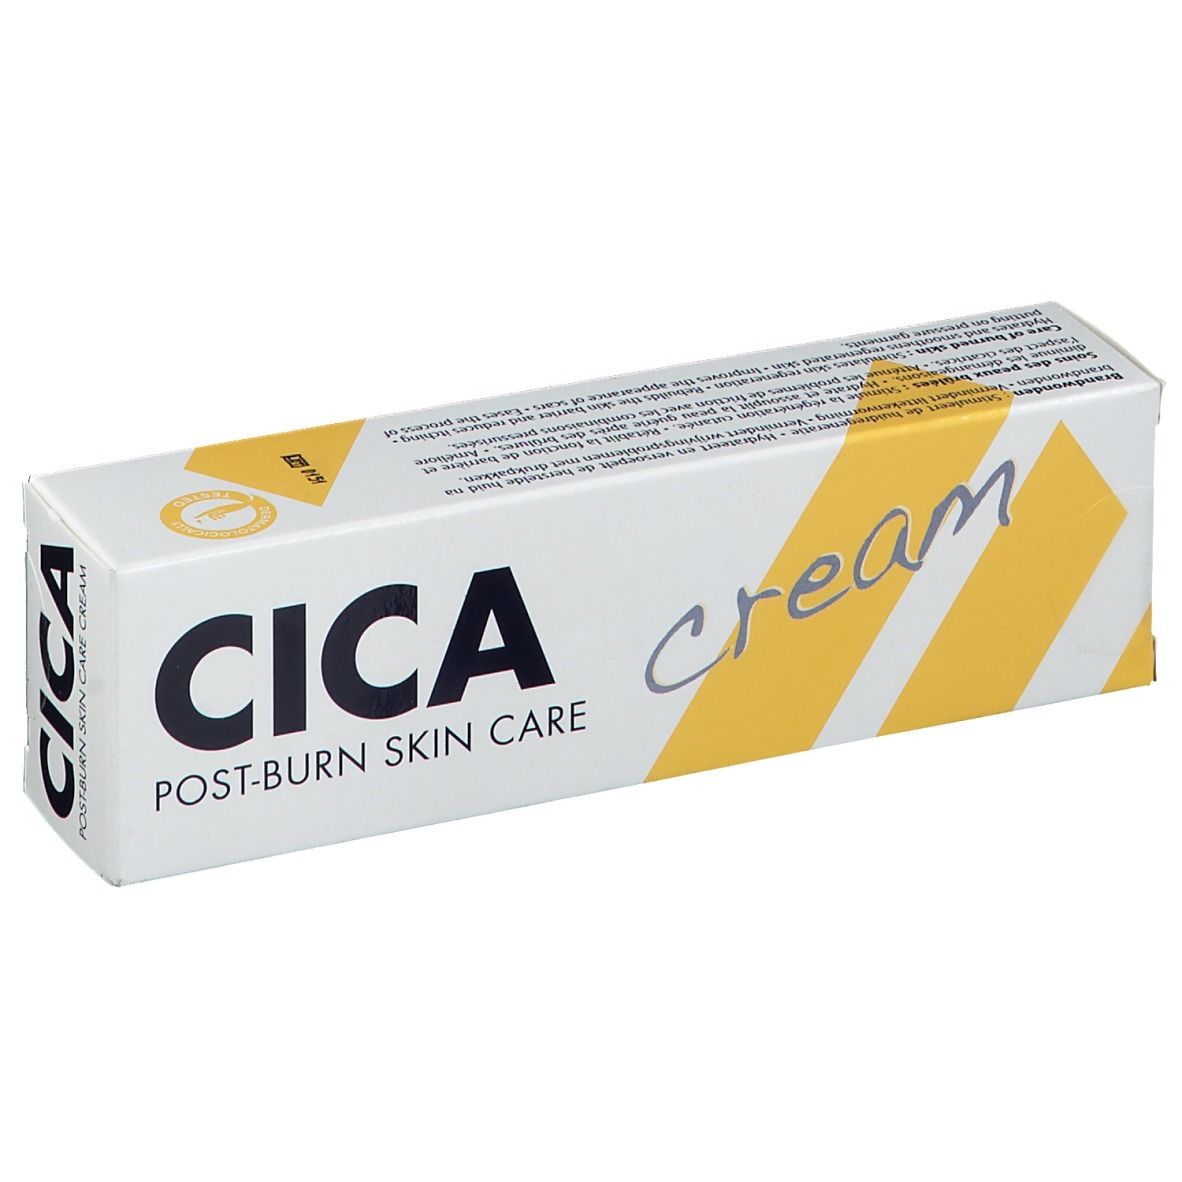 NAQI® Cica Cream